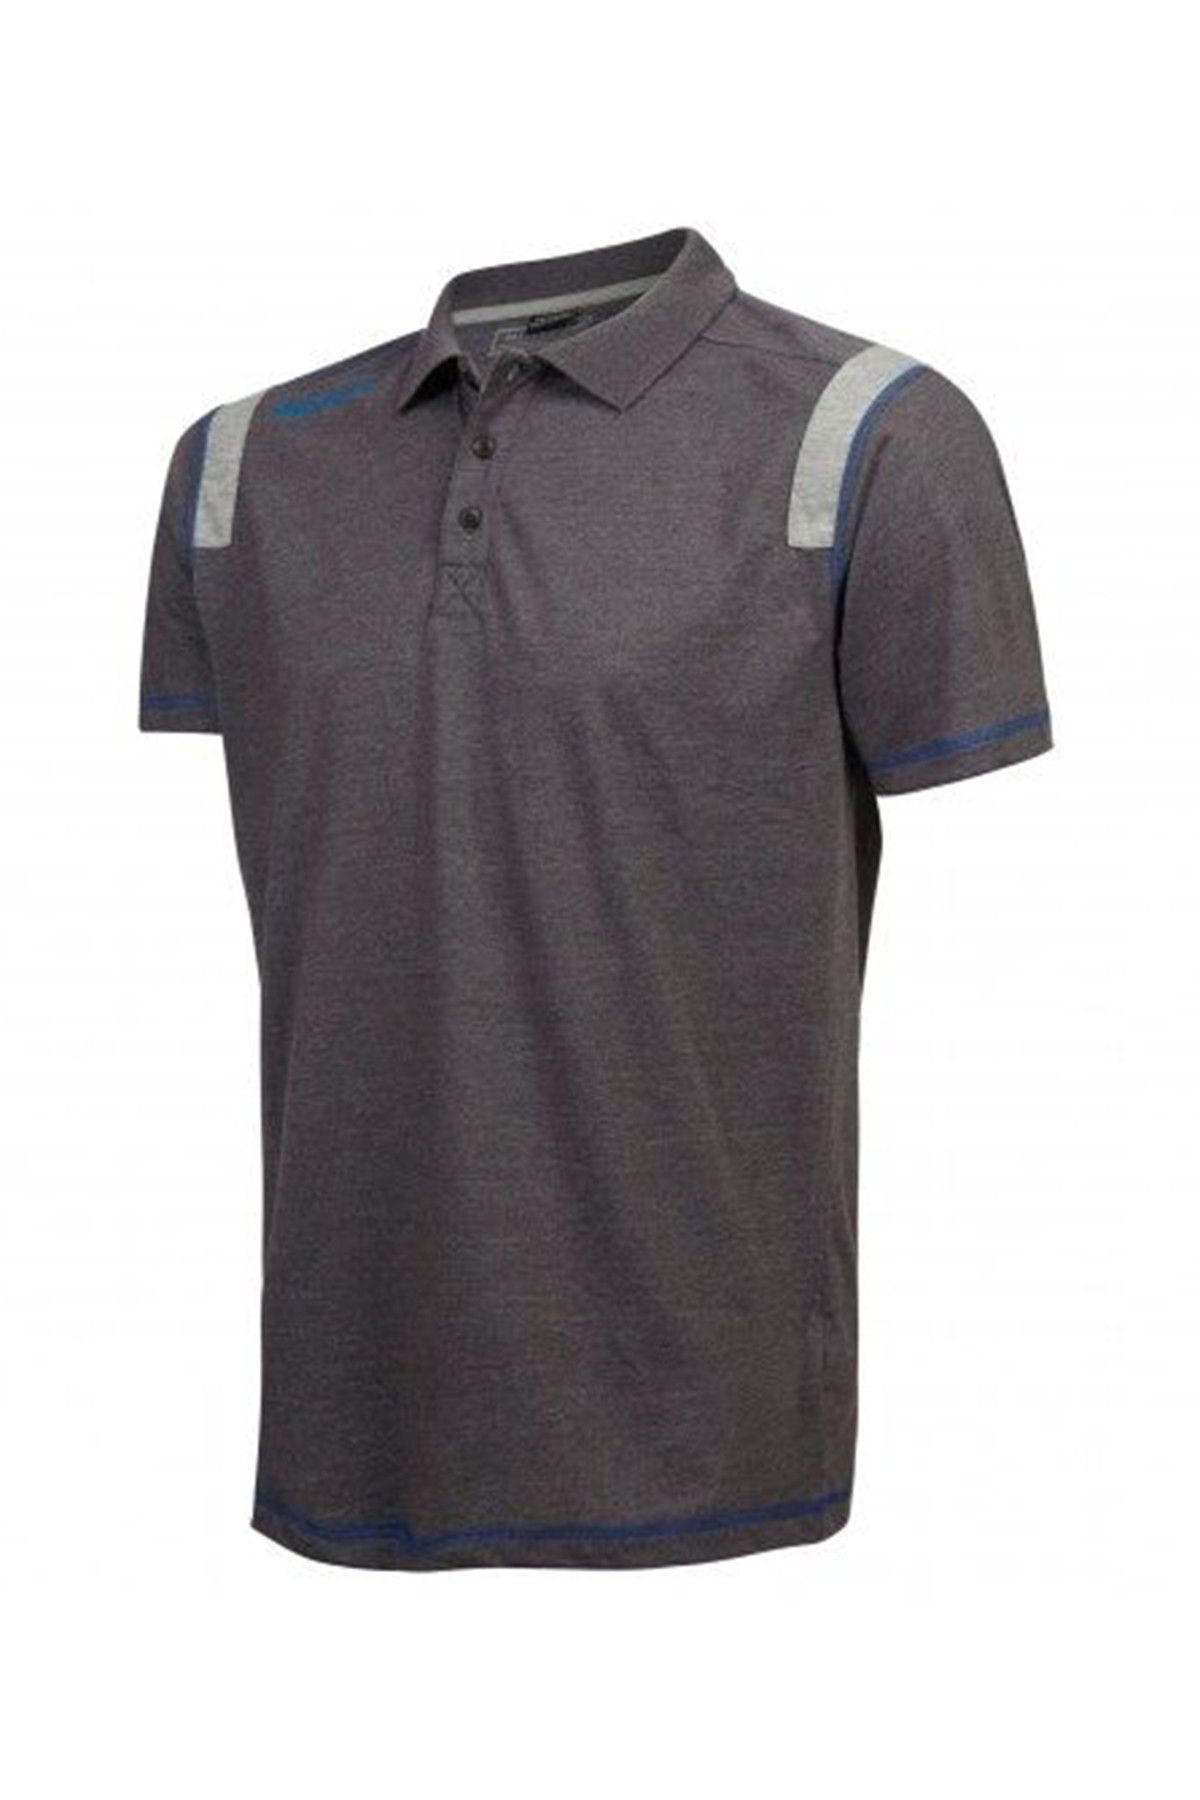 Millet Granitic Polo Erkek T Shirt Miv5380